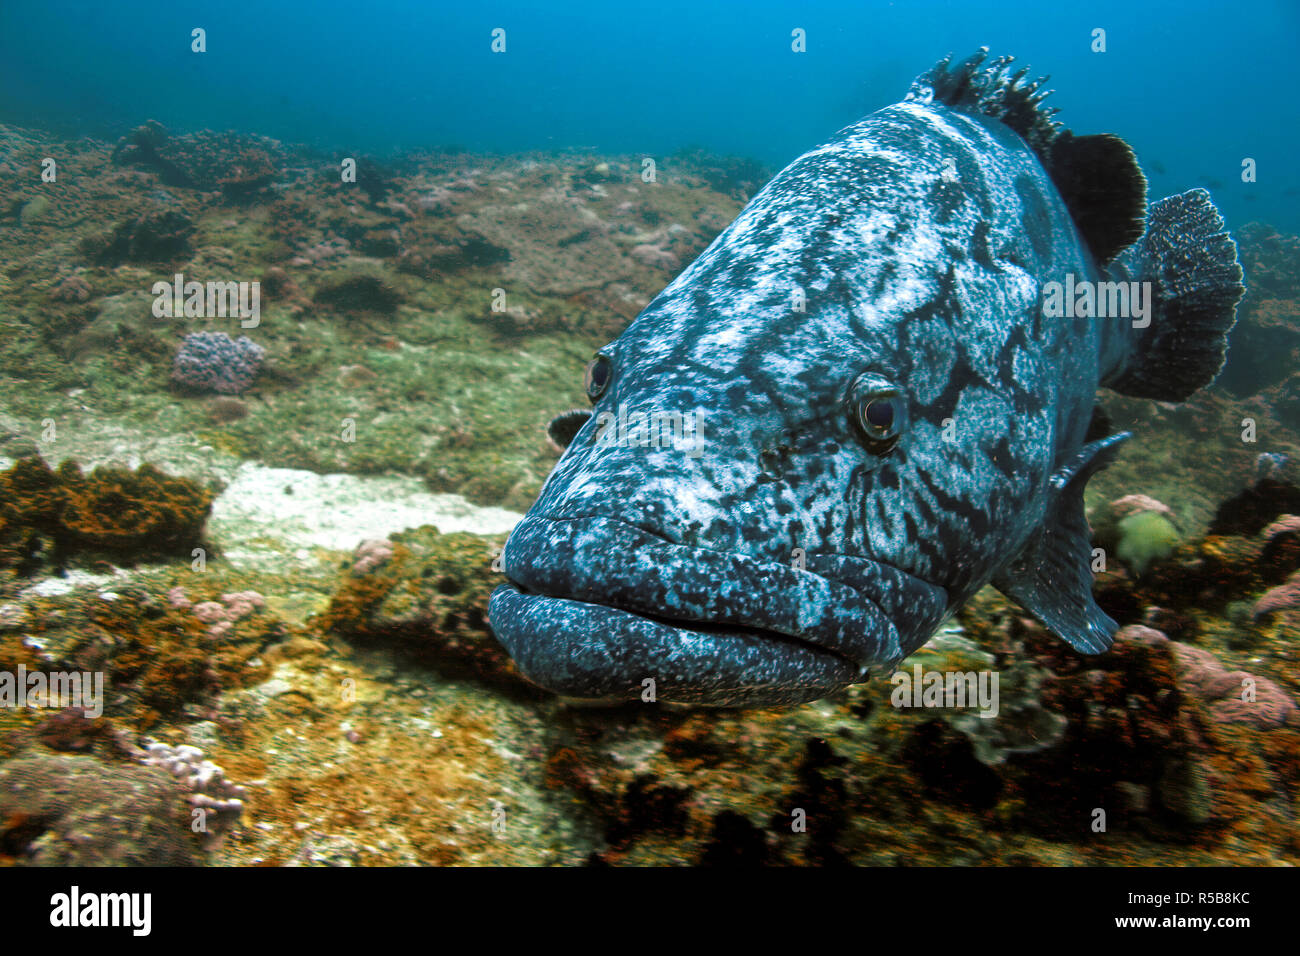 Potato cod, Potato grouper or Giant Grouper (Epinephelus tukula), at a rocky reef, Tofo, Mosambique Stock Photo